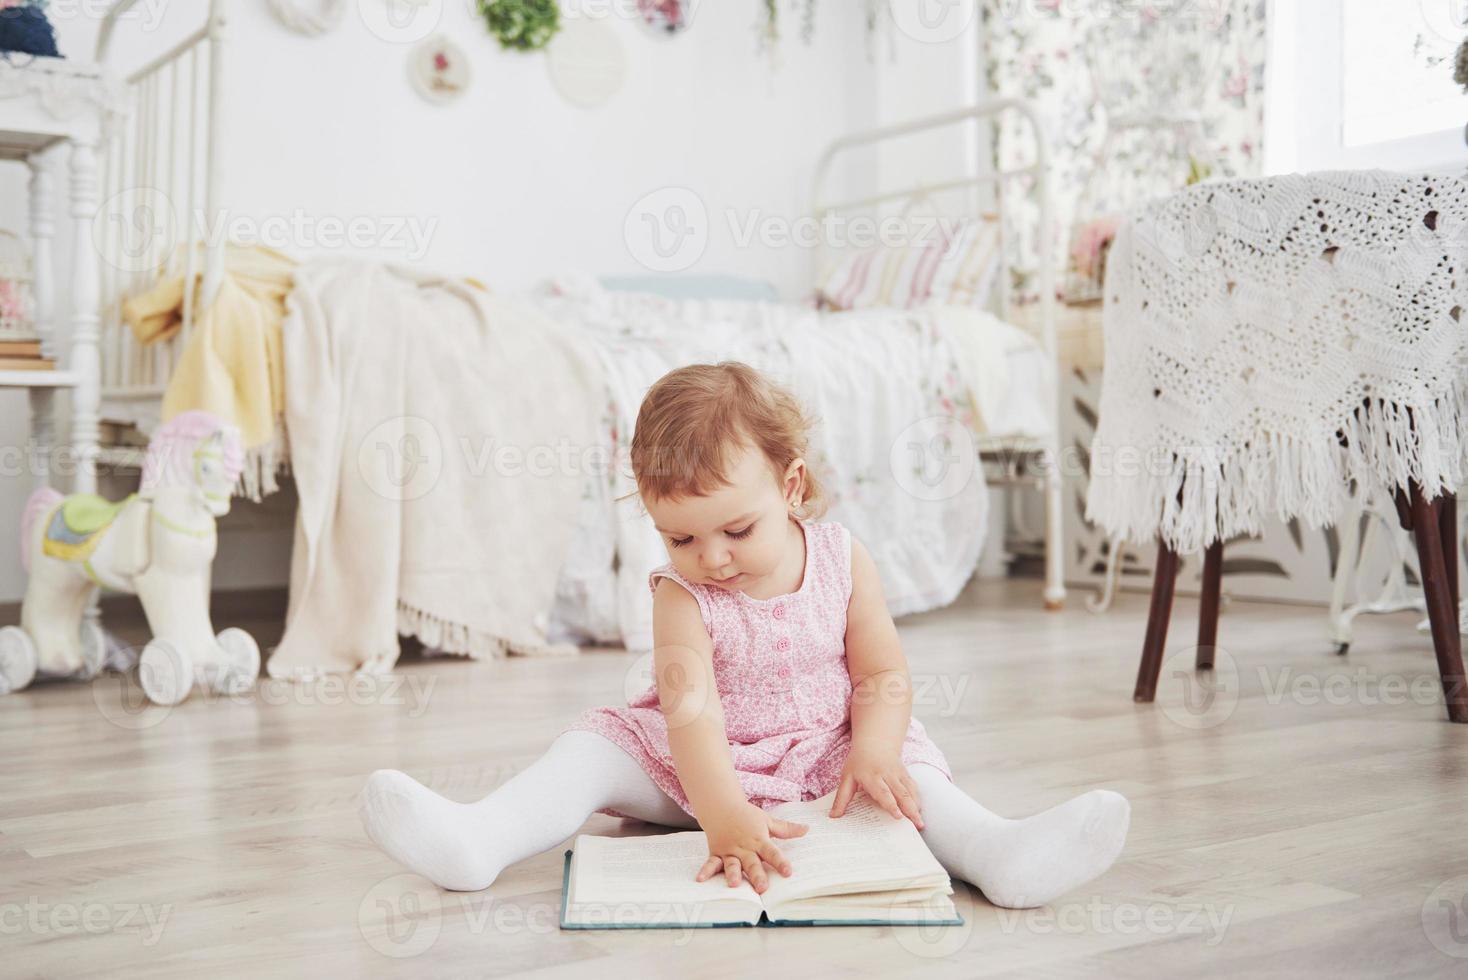 linda garotinha brincando de brinquedos. loira de olhos azuis. cadeira branca. quarto das crianças. retrato de menina feliz. conceito de infância foto